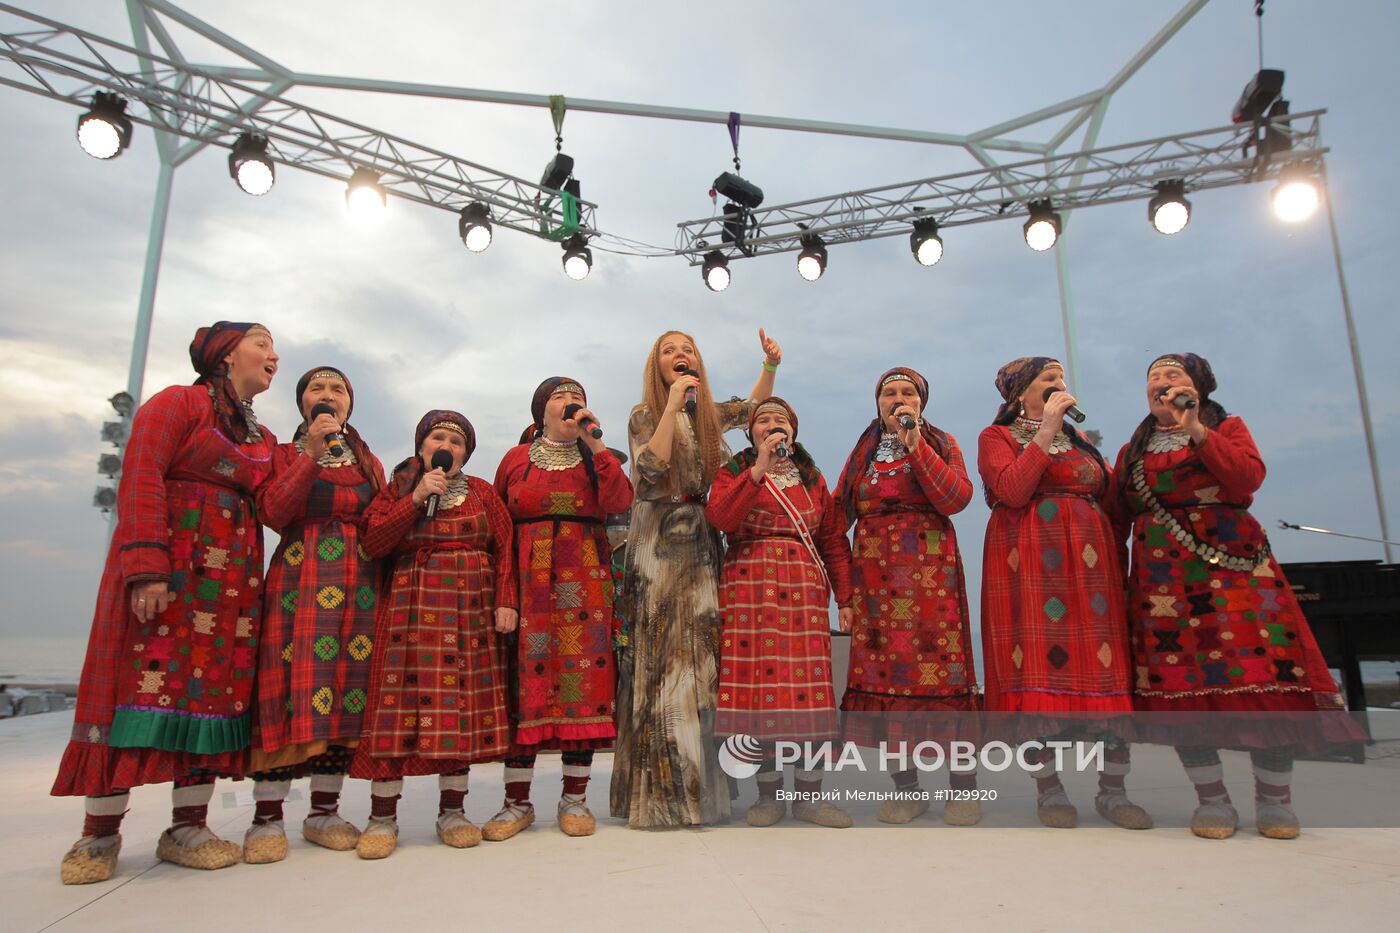 Российская вечеринка в рамках конкурса "Евровидение 2012"